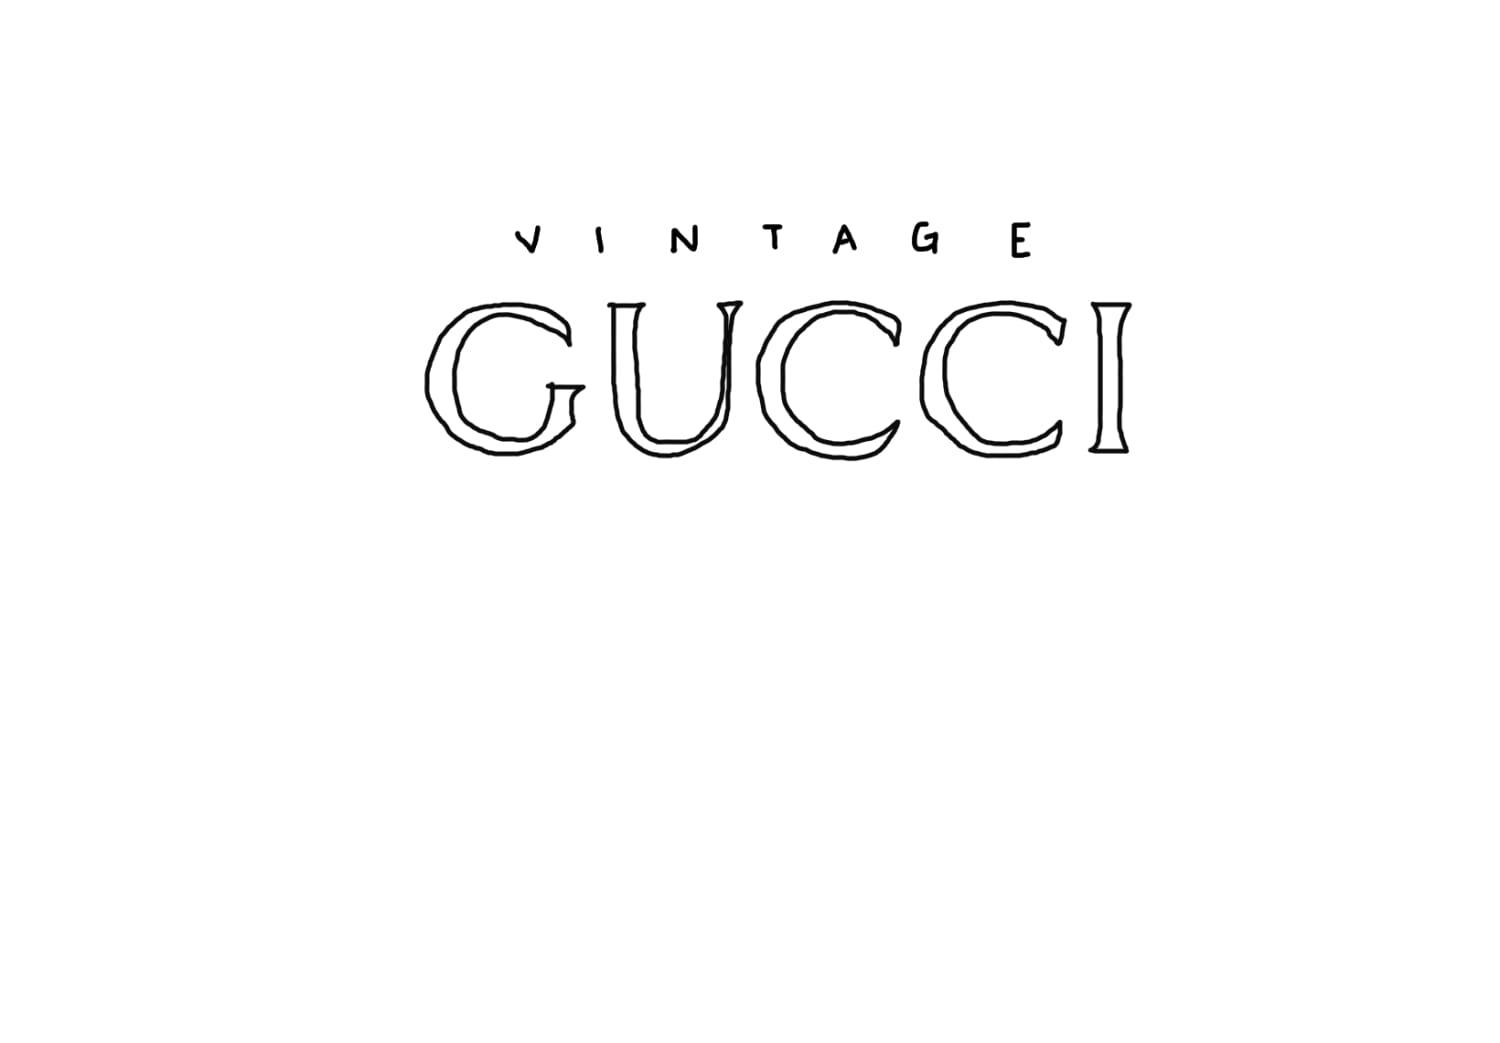 Vintage Gucci Brown Suede Monogram Shoulder Bag – Treasures of NYC